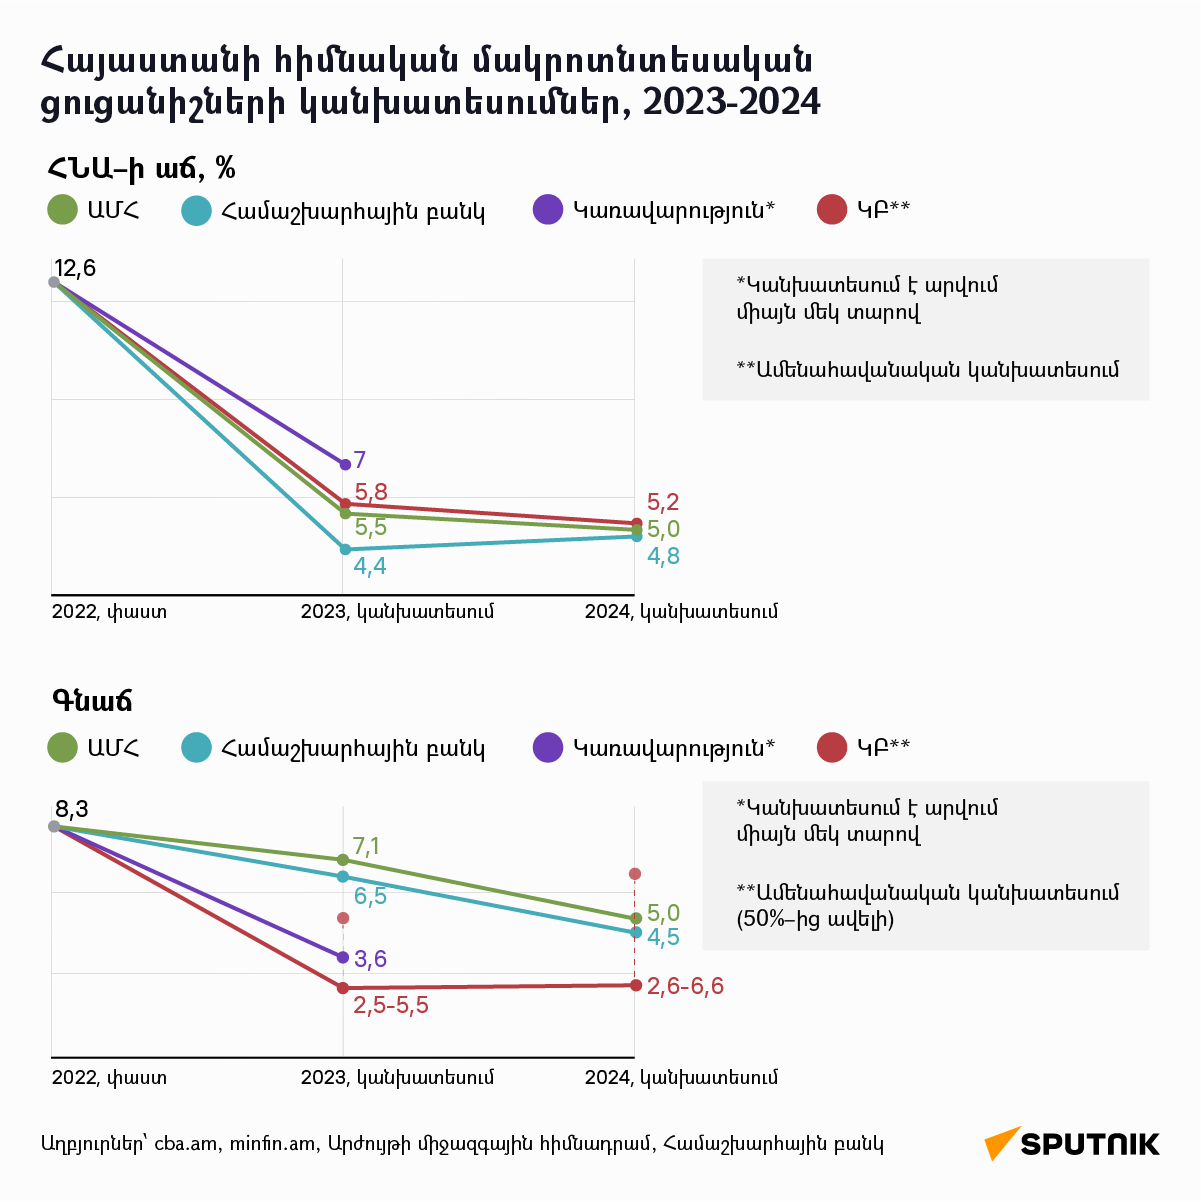 Հայաստանի հիմնական մակրոտնտեսական ցուցանիշների կանխատեսումներ, 2023-2024 - Sputnik Արմենիա